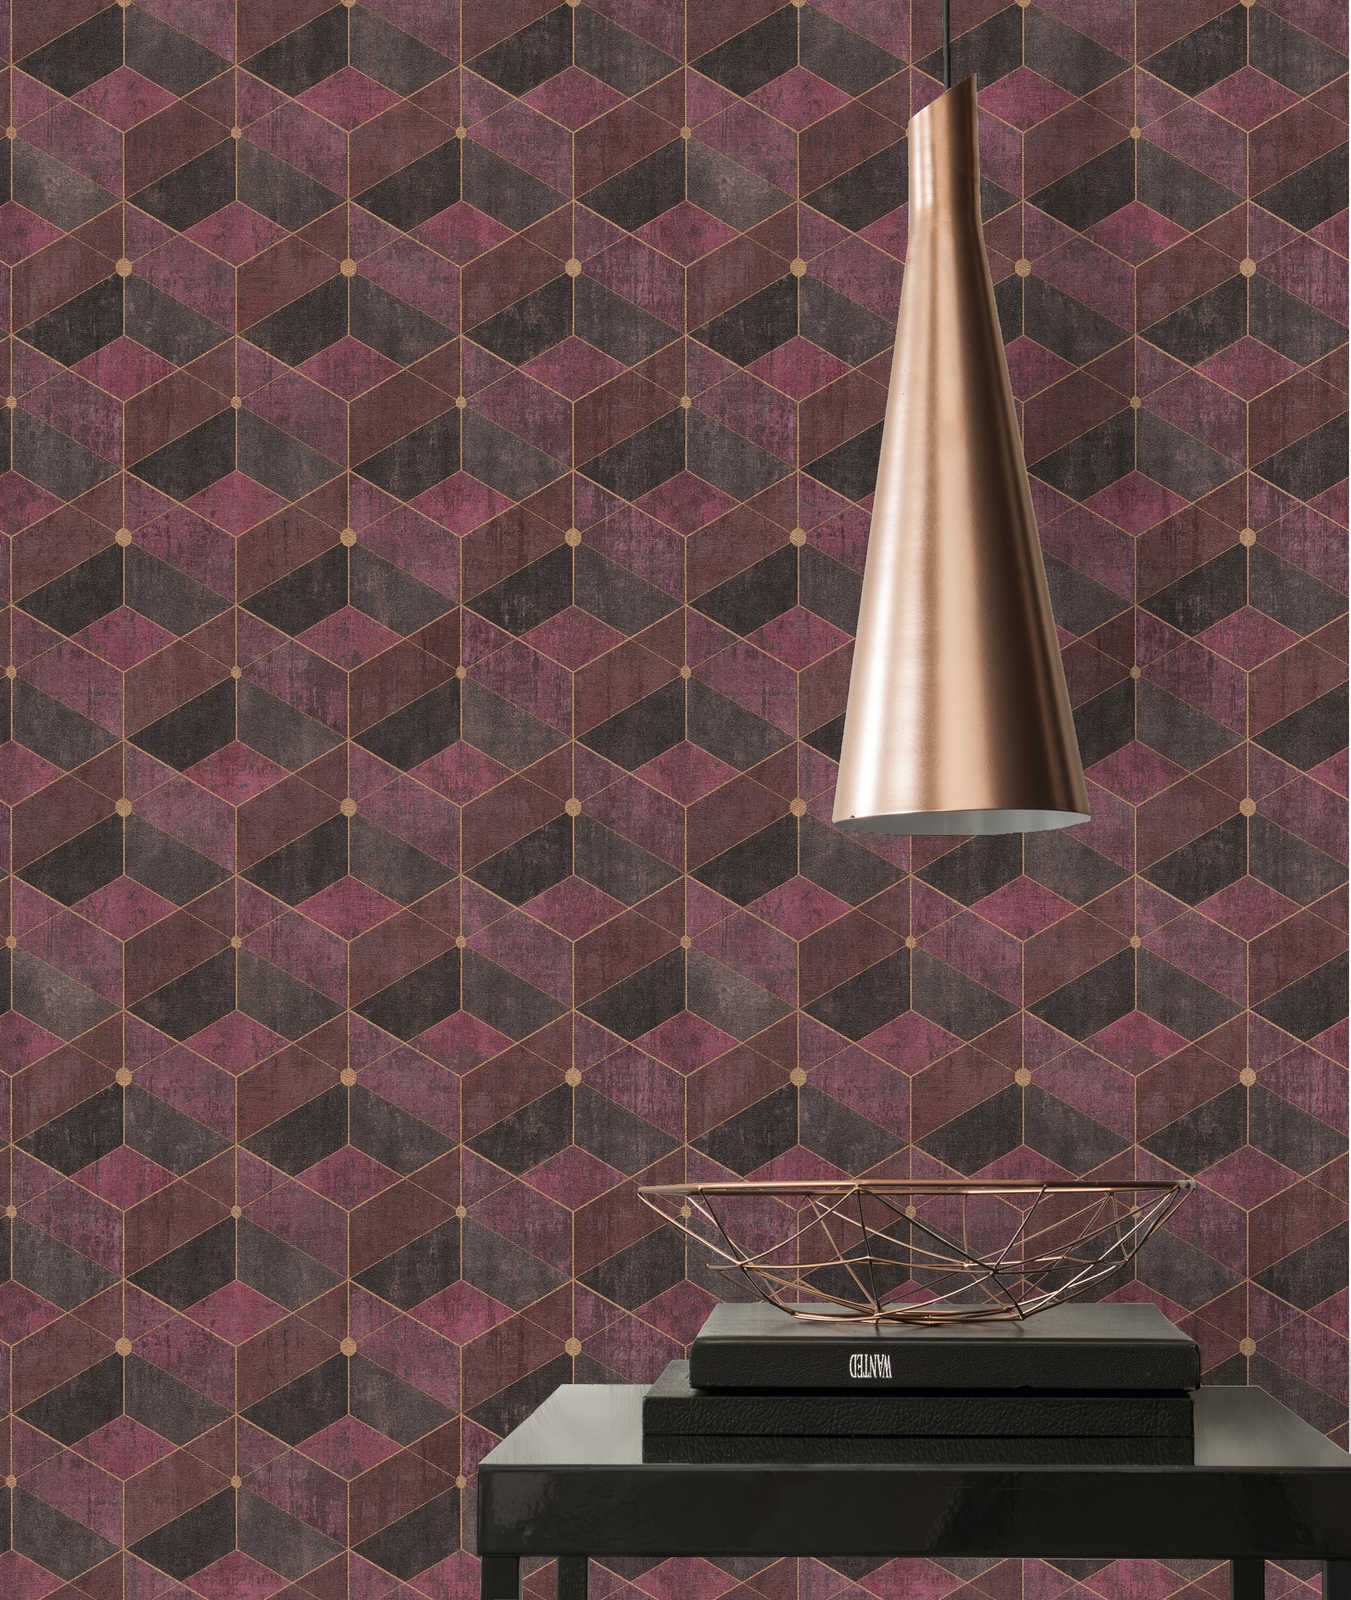             Non-woven wallpaper with retro graphic pattern, purple & gold
        